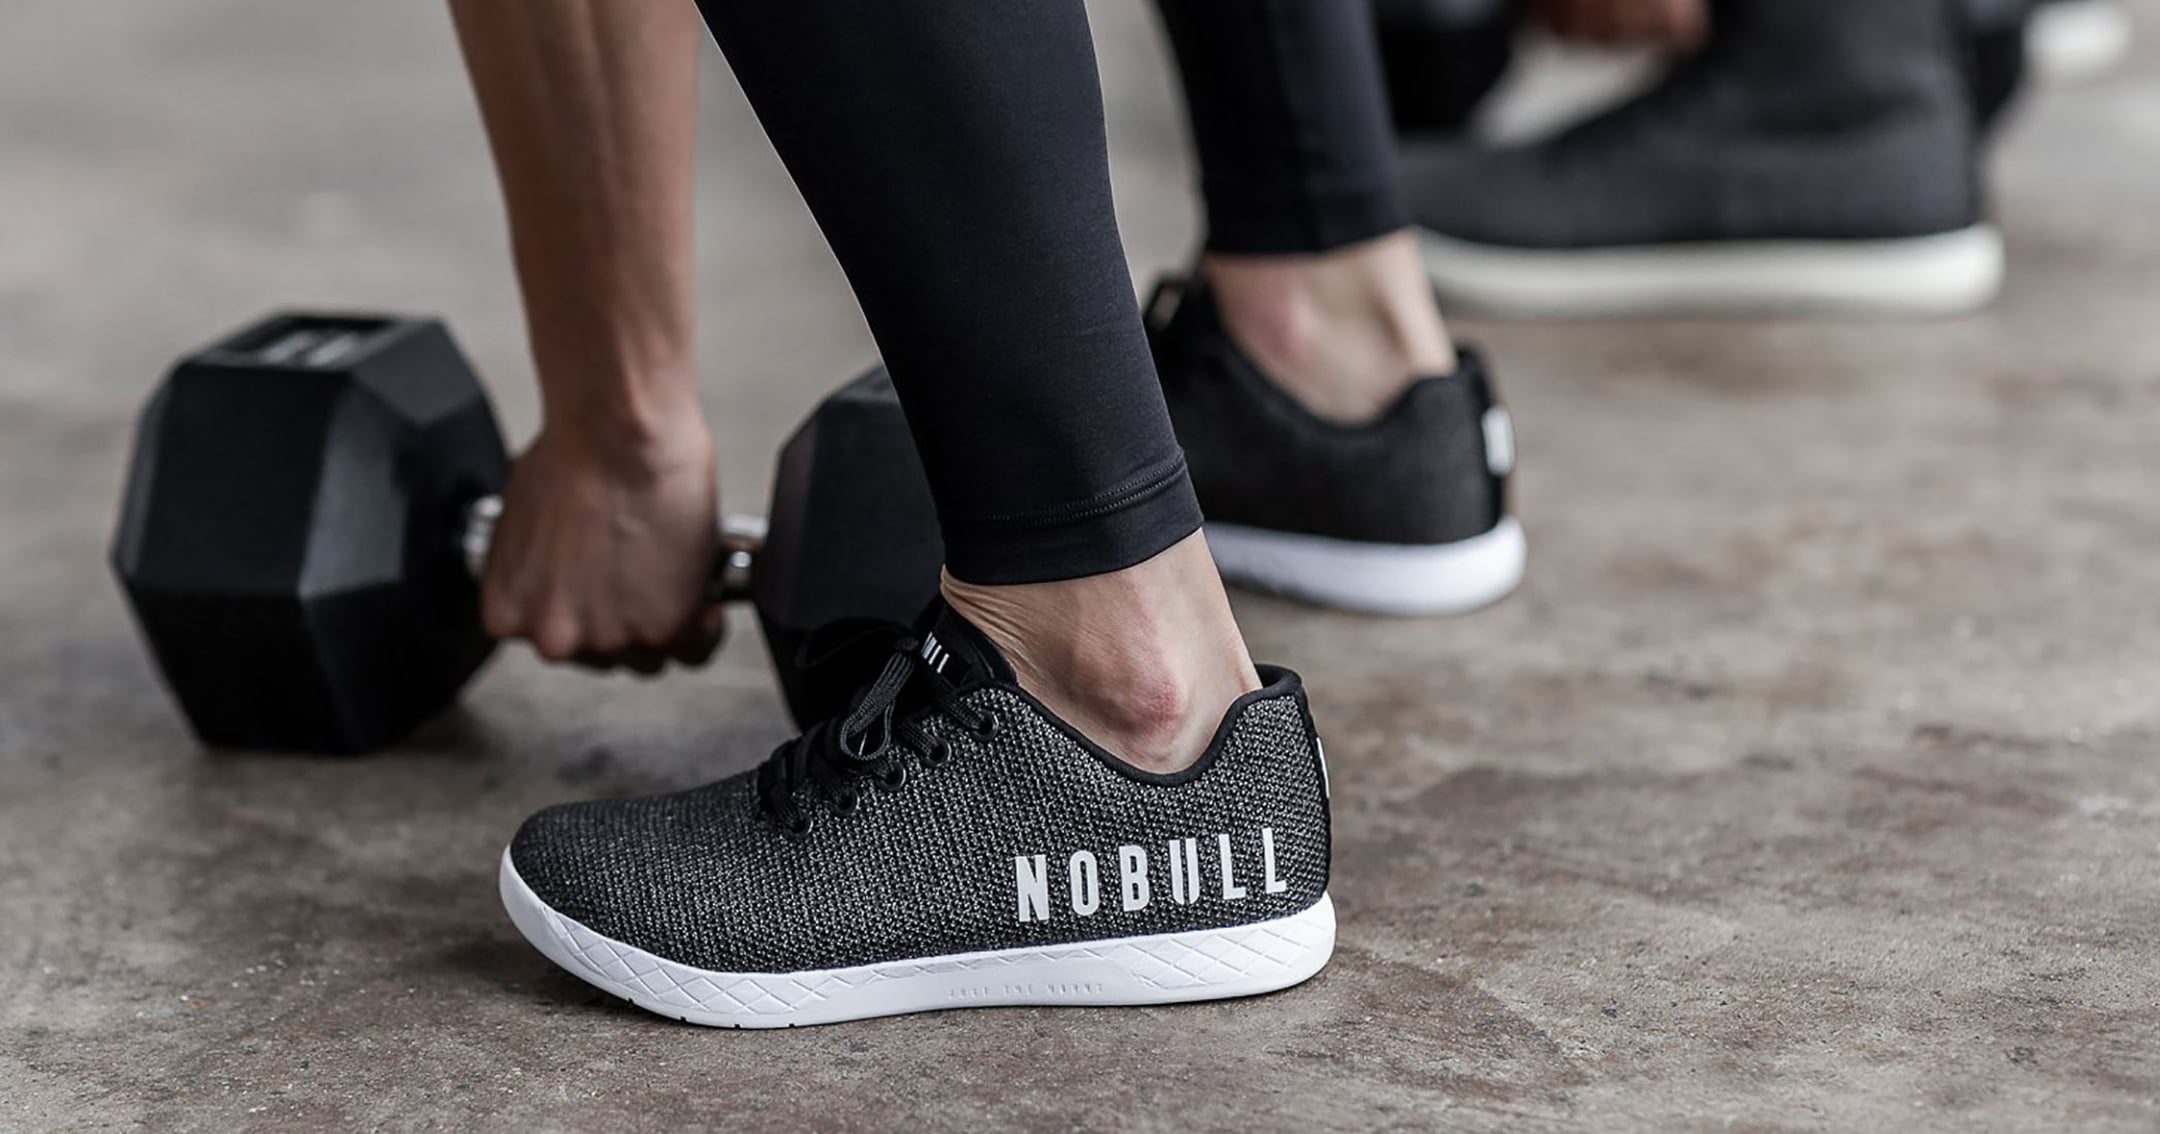 Nobull Shoe Review | POPSUGAR Fitness